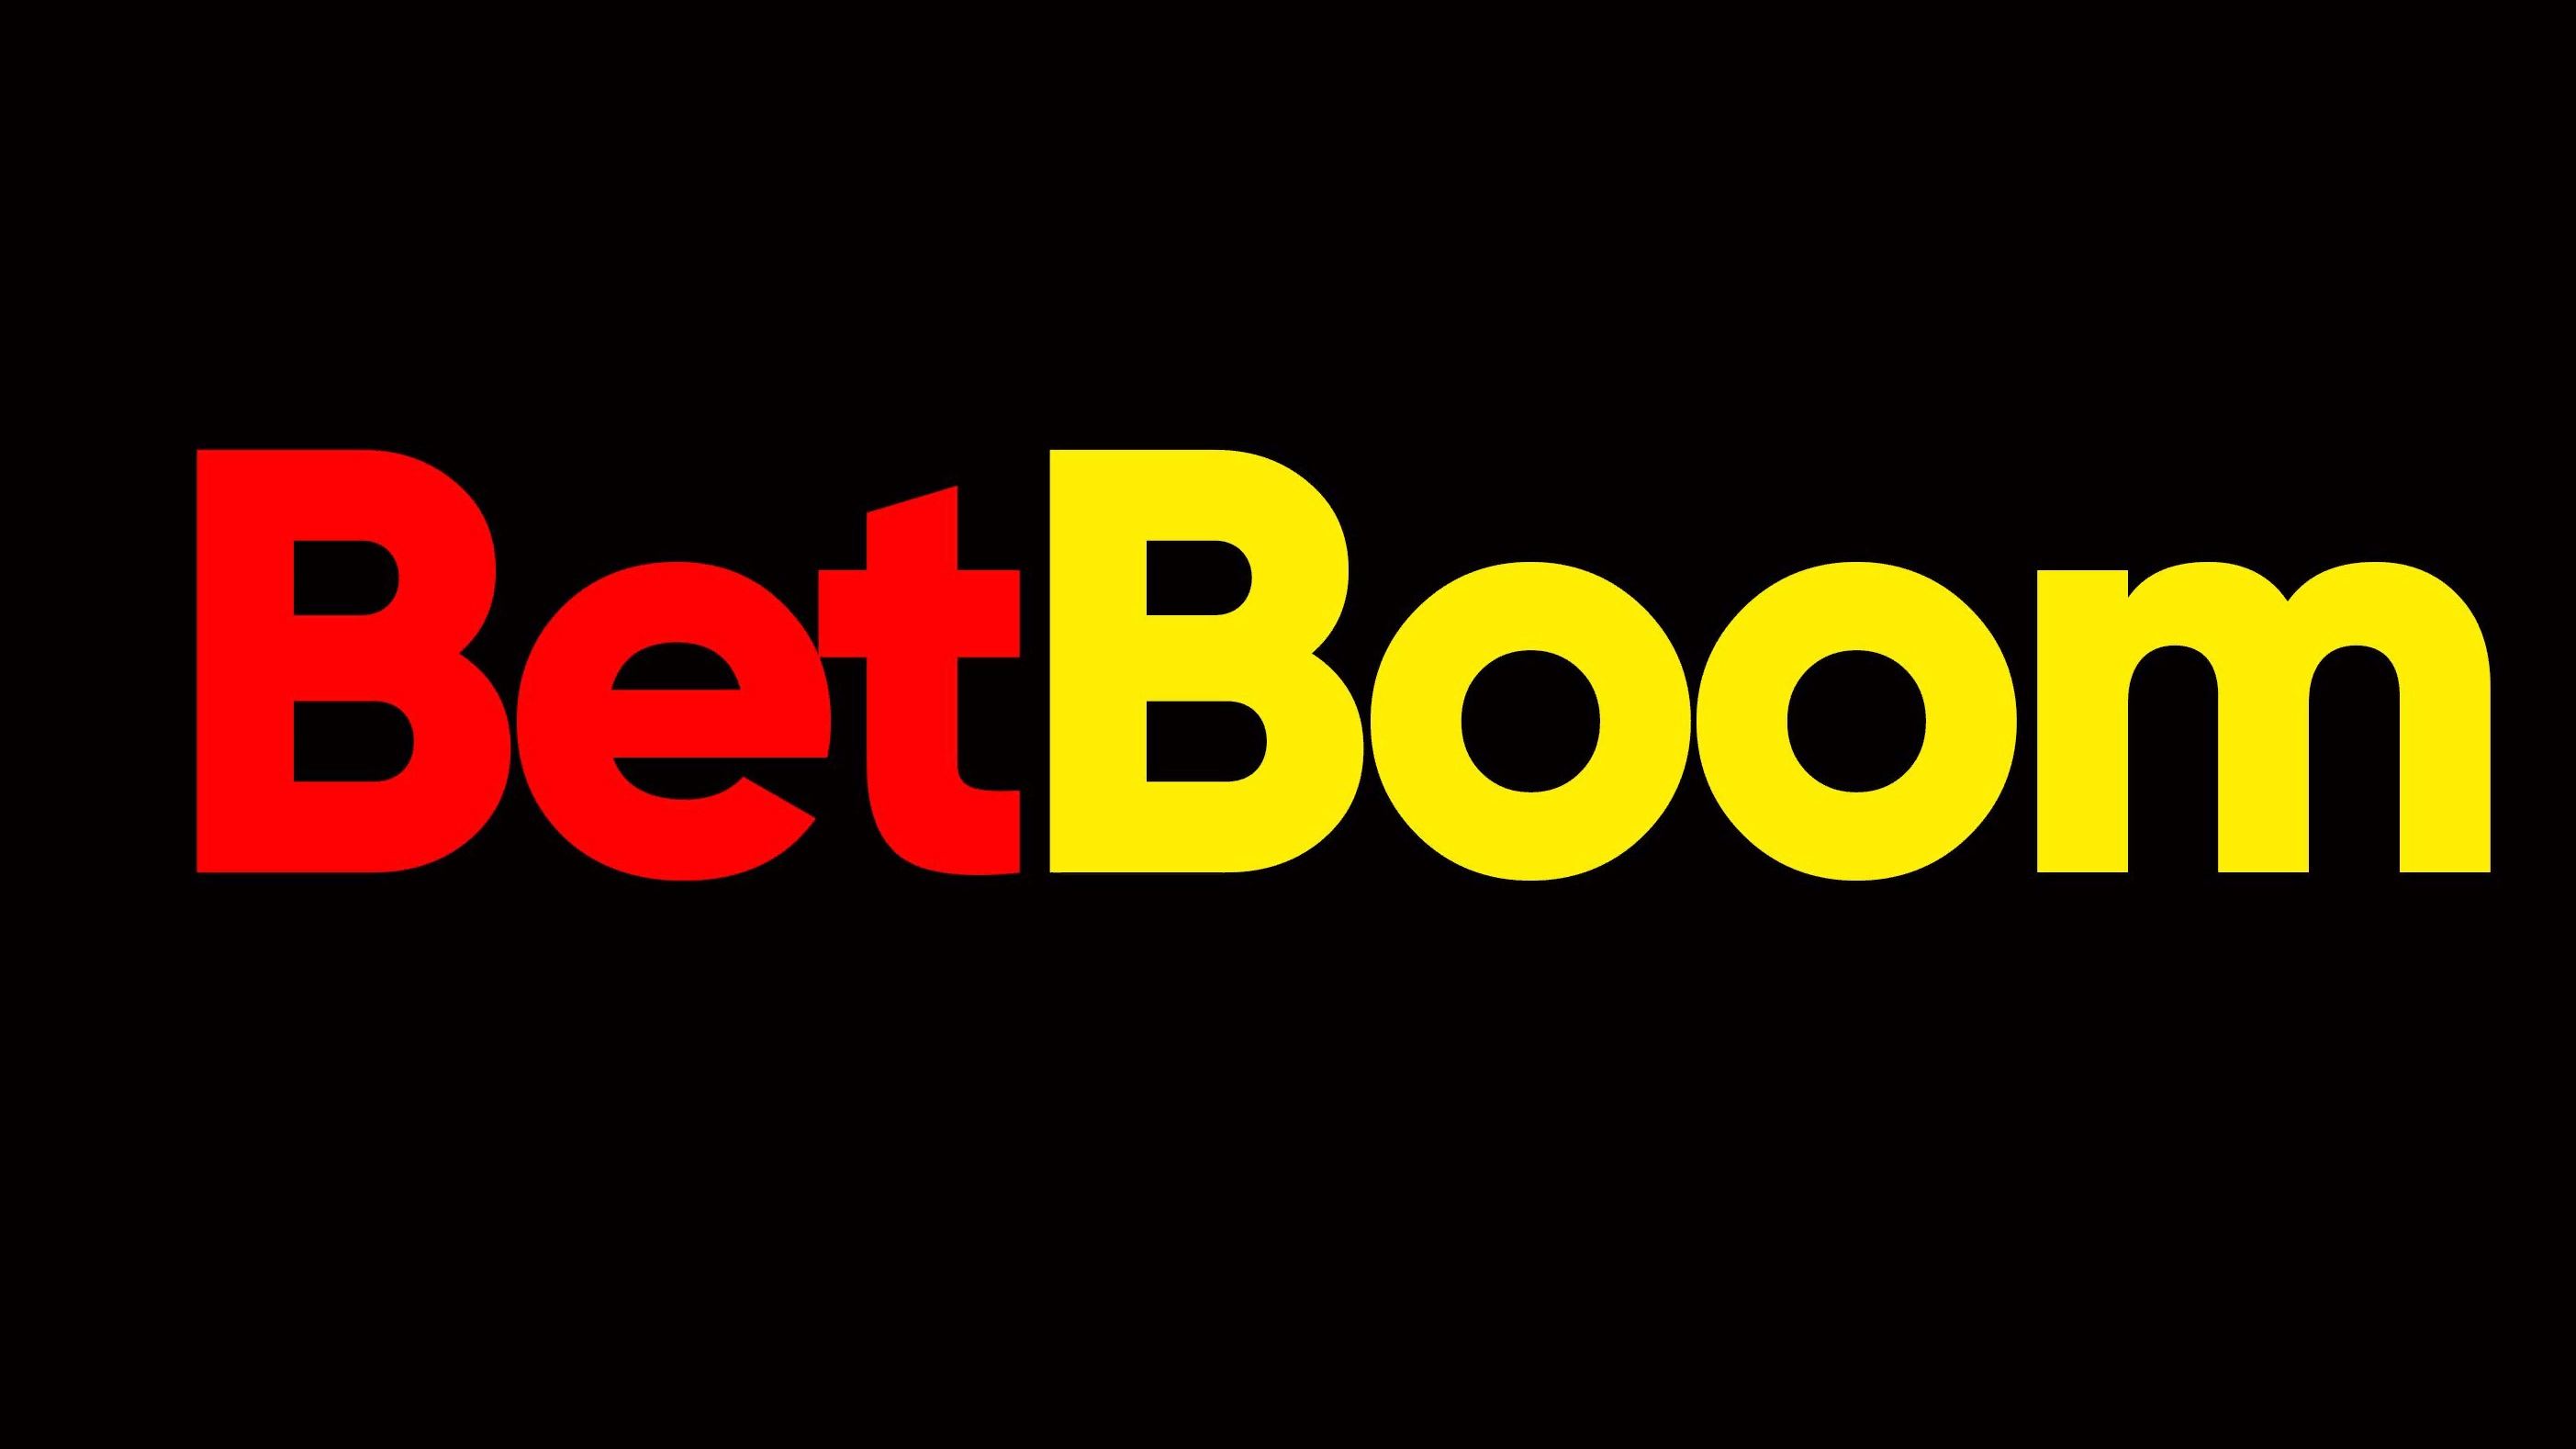 BetBoom Team затизерила изменения в ростере по Dota 2